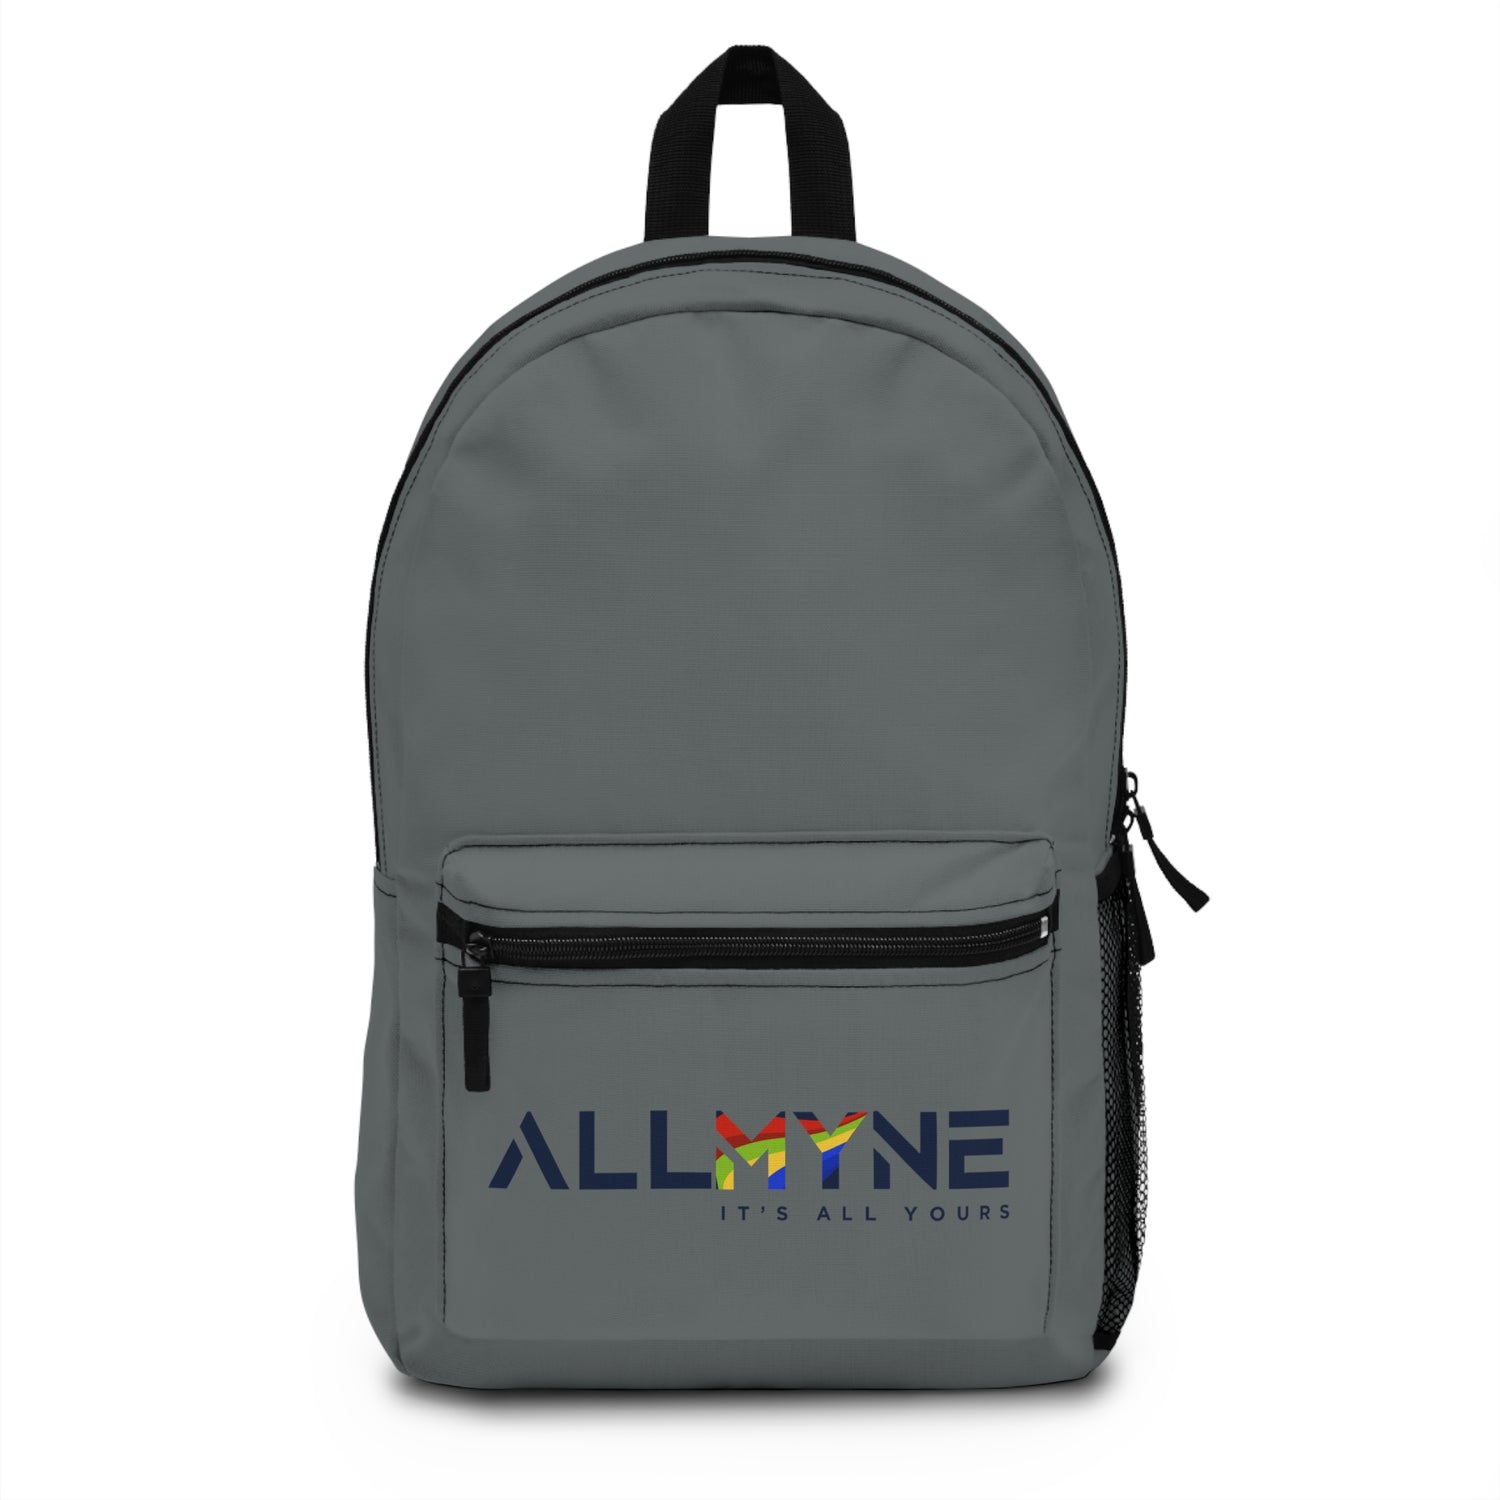 ALLMYNE Backpack (Grey)